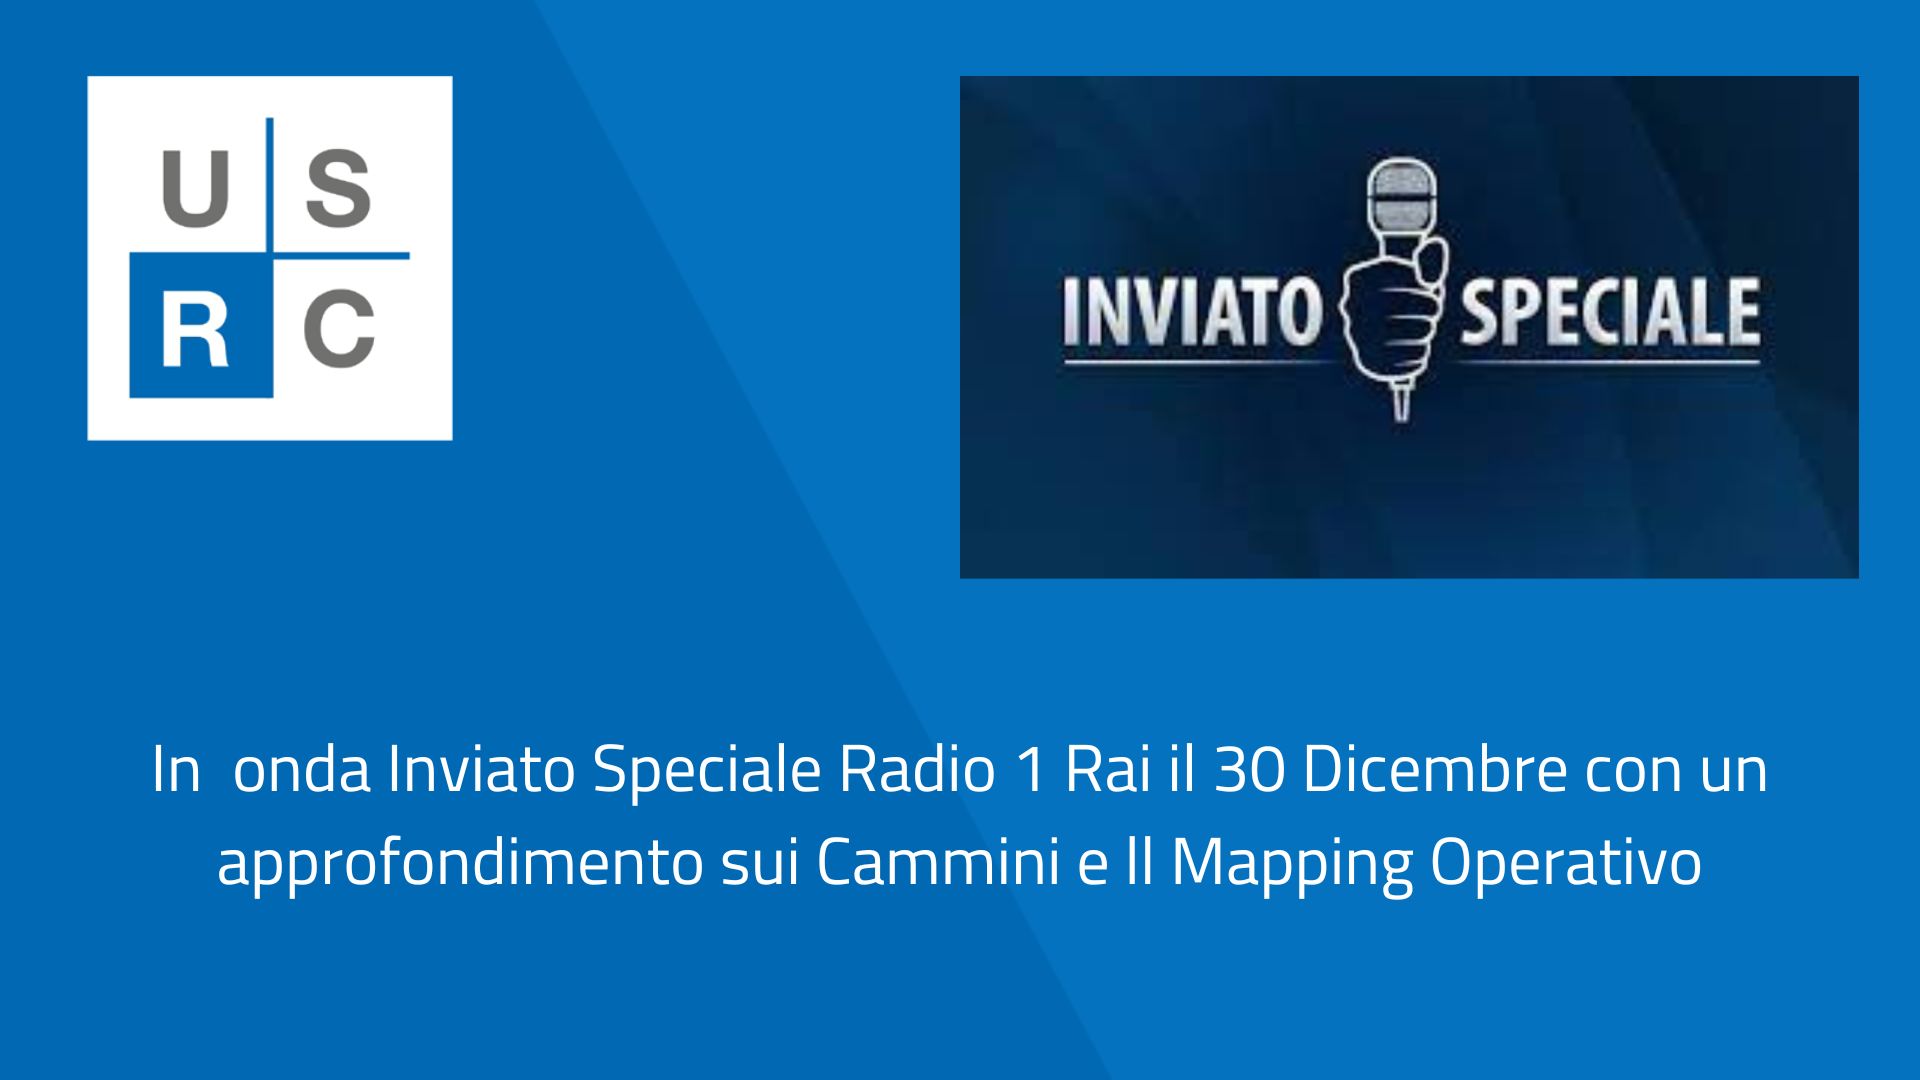 Inviato Speciale Radio Rai 1